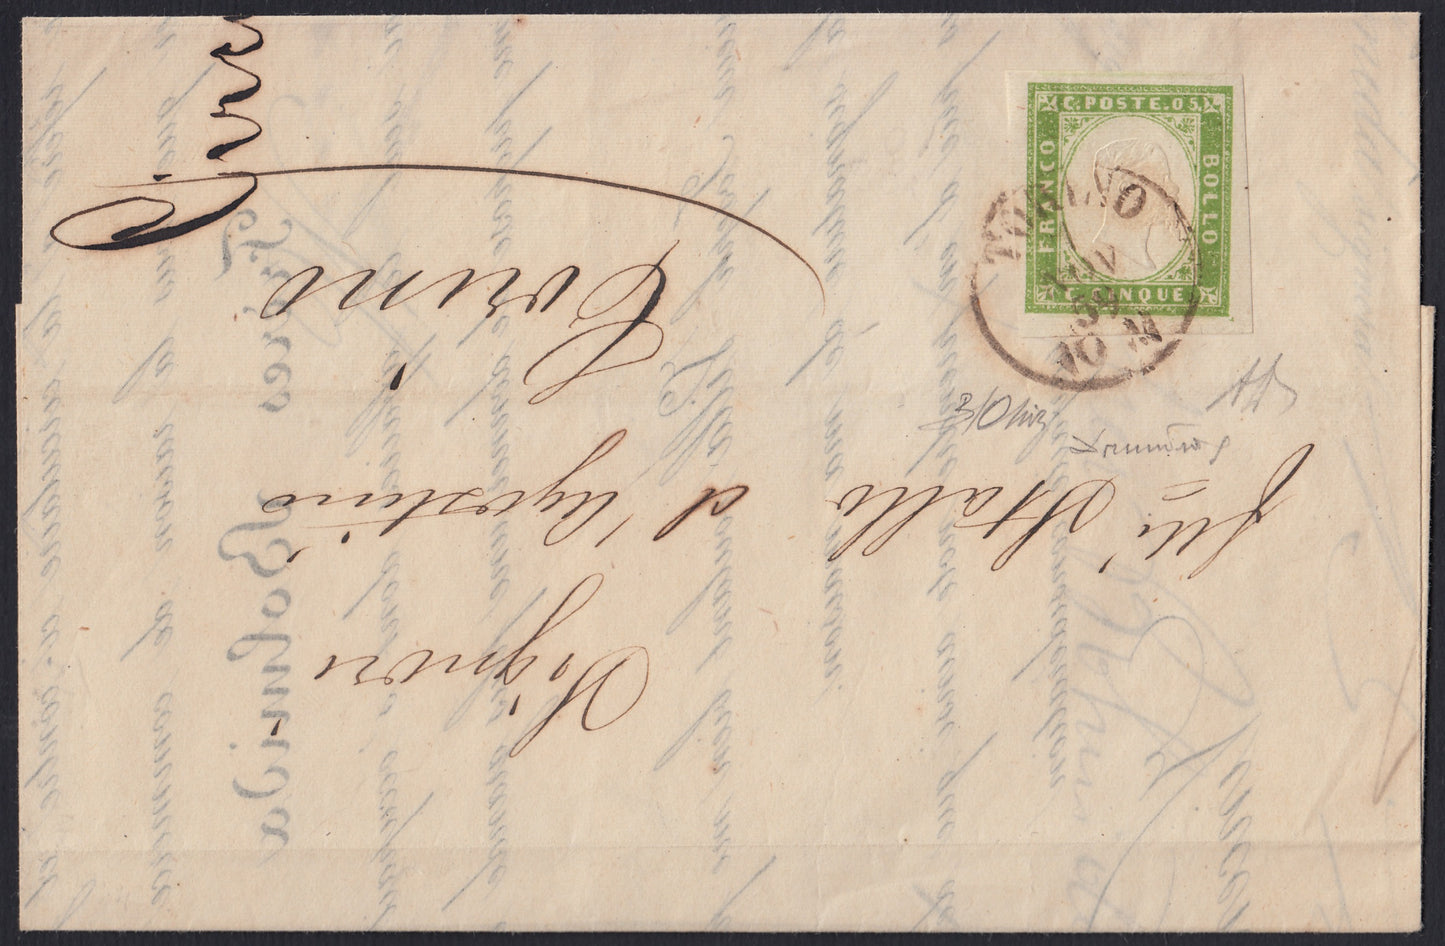 174 - 1859 - Lettera spedita da Torino per città 7/11/59, affrancata con c. 5 verde giallo brillante II composizione tiratura 1859 isolato, raro e molto bello. (13B).